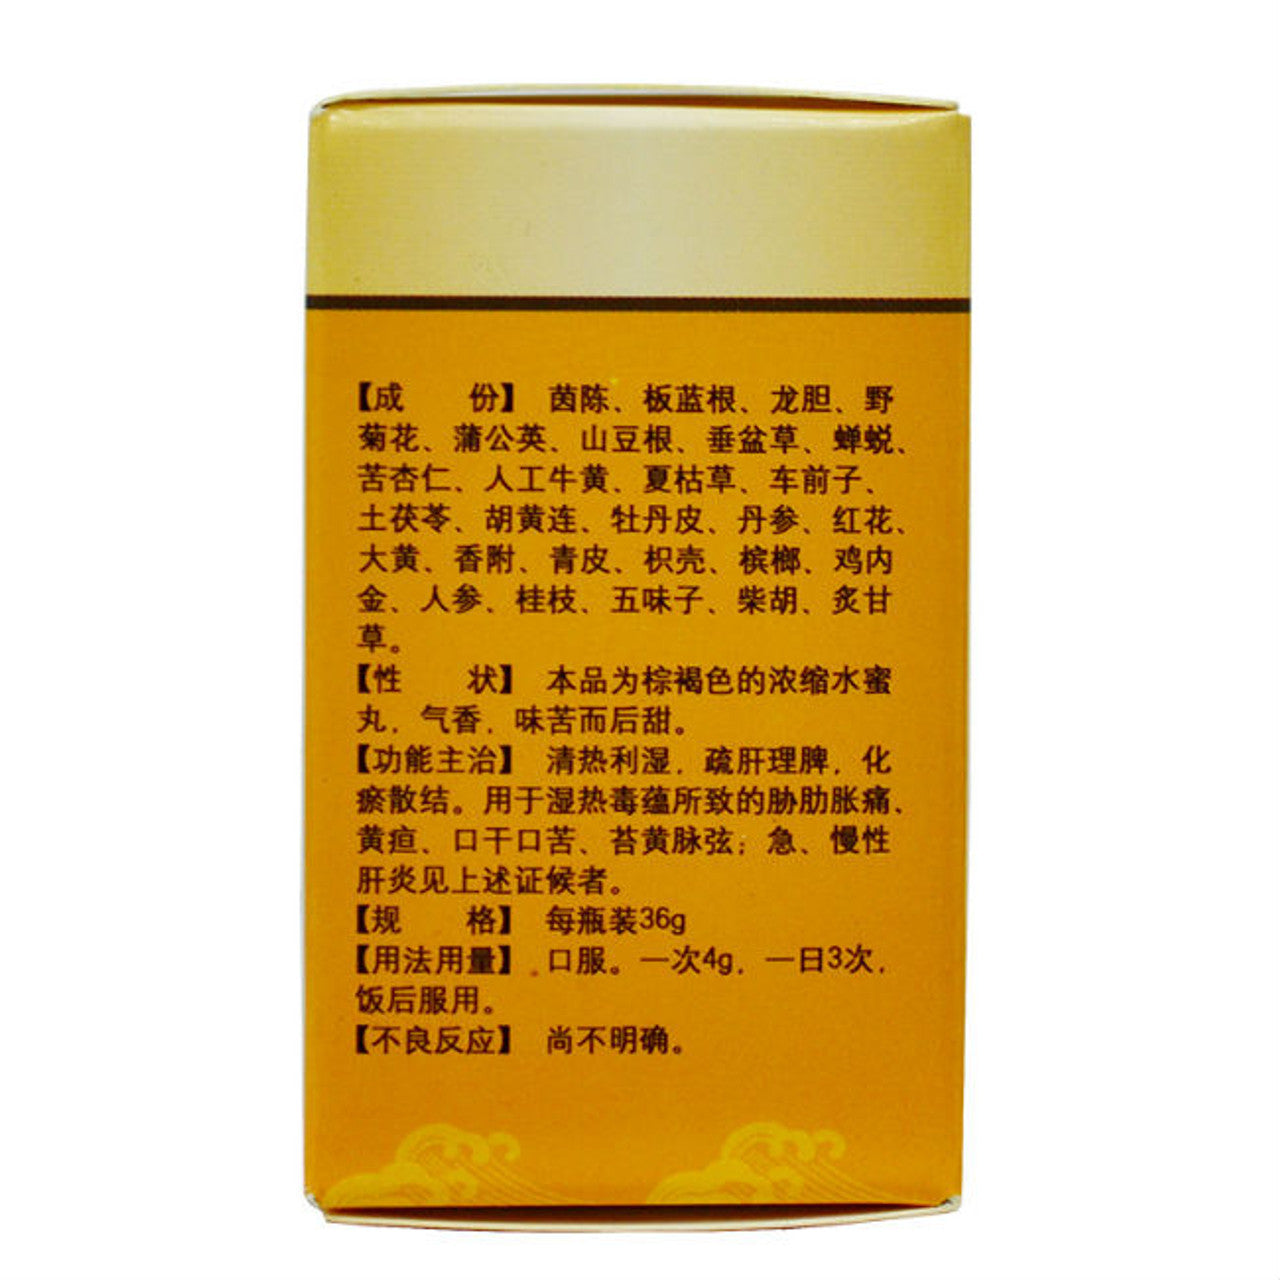 China Herb. Fufang Yigan Wan or Fufang Yigan Pills for Hepatitis. Compound Yigan Pill. Fu Fang Yi Gan Wan